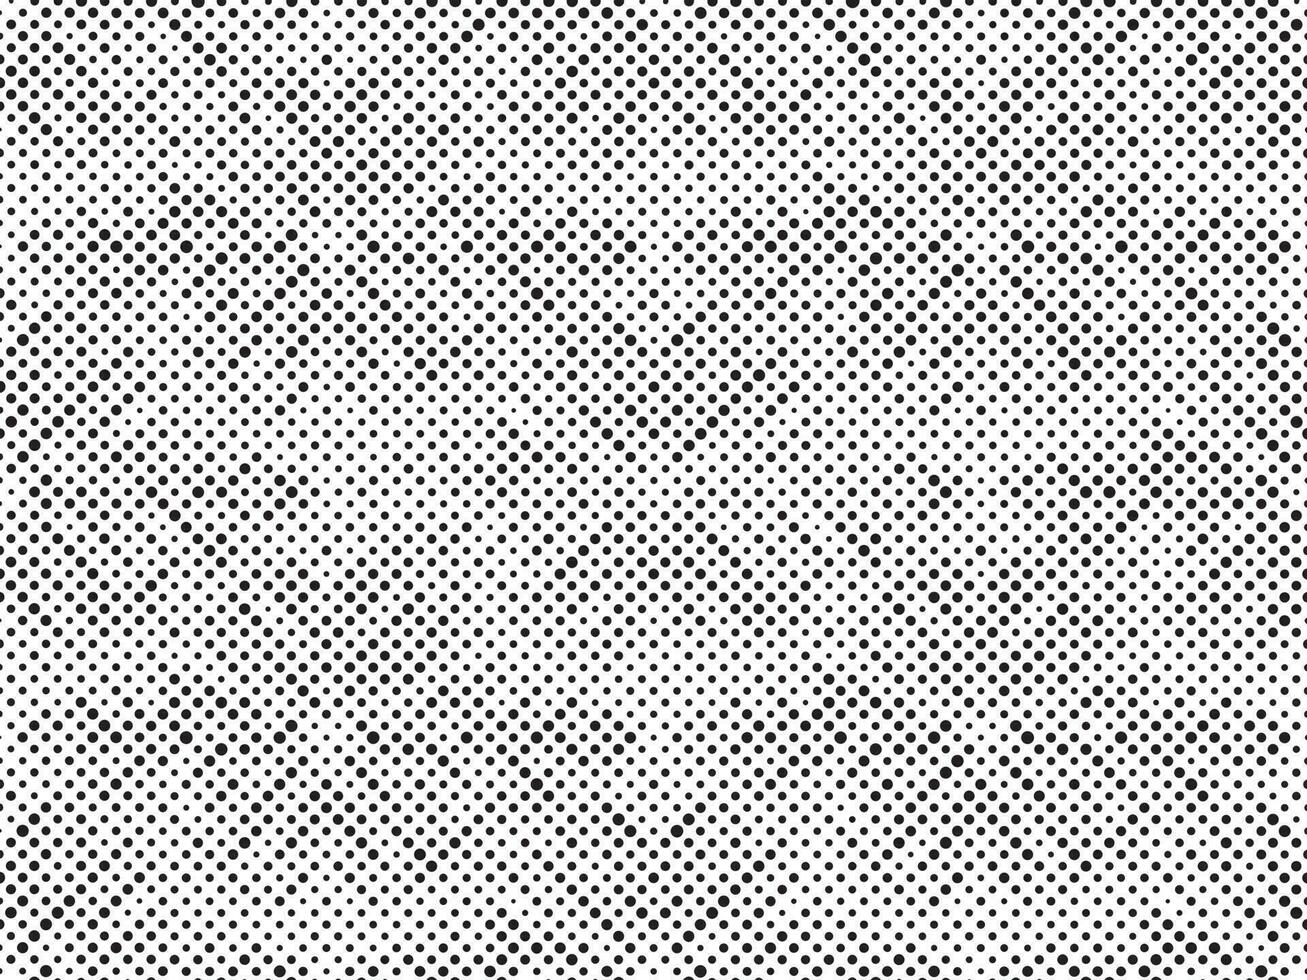 svart och vit halvton rutnät. modern minimalistisk geometrisk mönster vektor